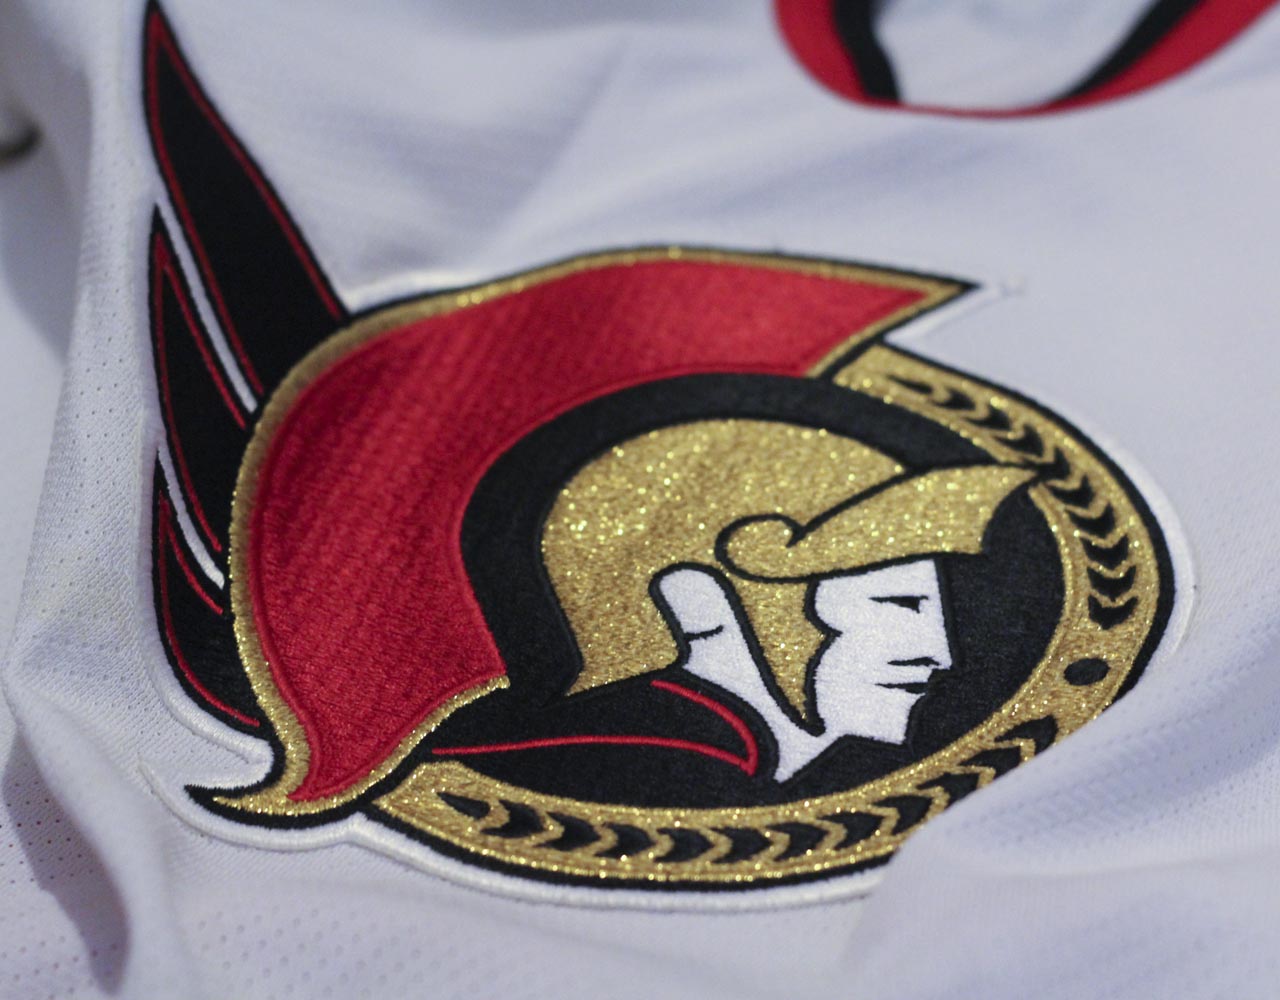 An Updated History of Ottawa Senators Jerseys - Bonk's Mullet